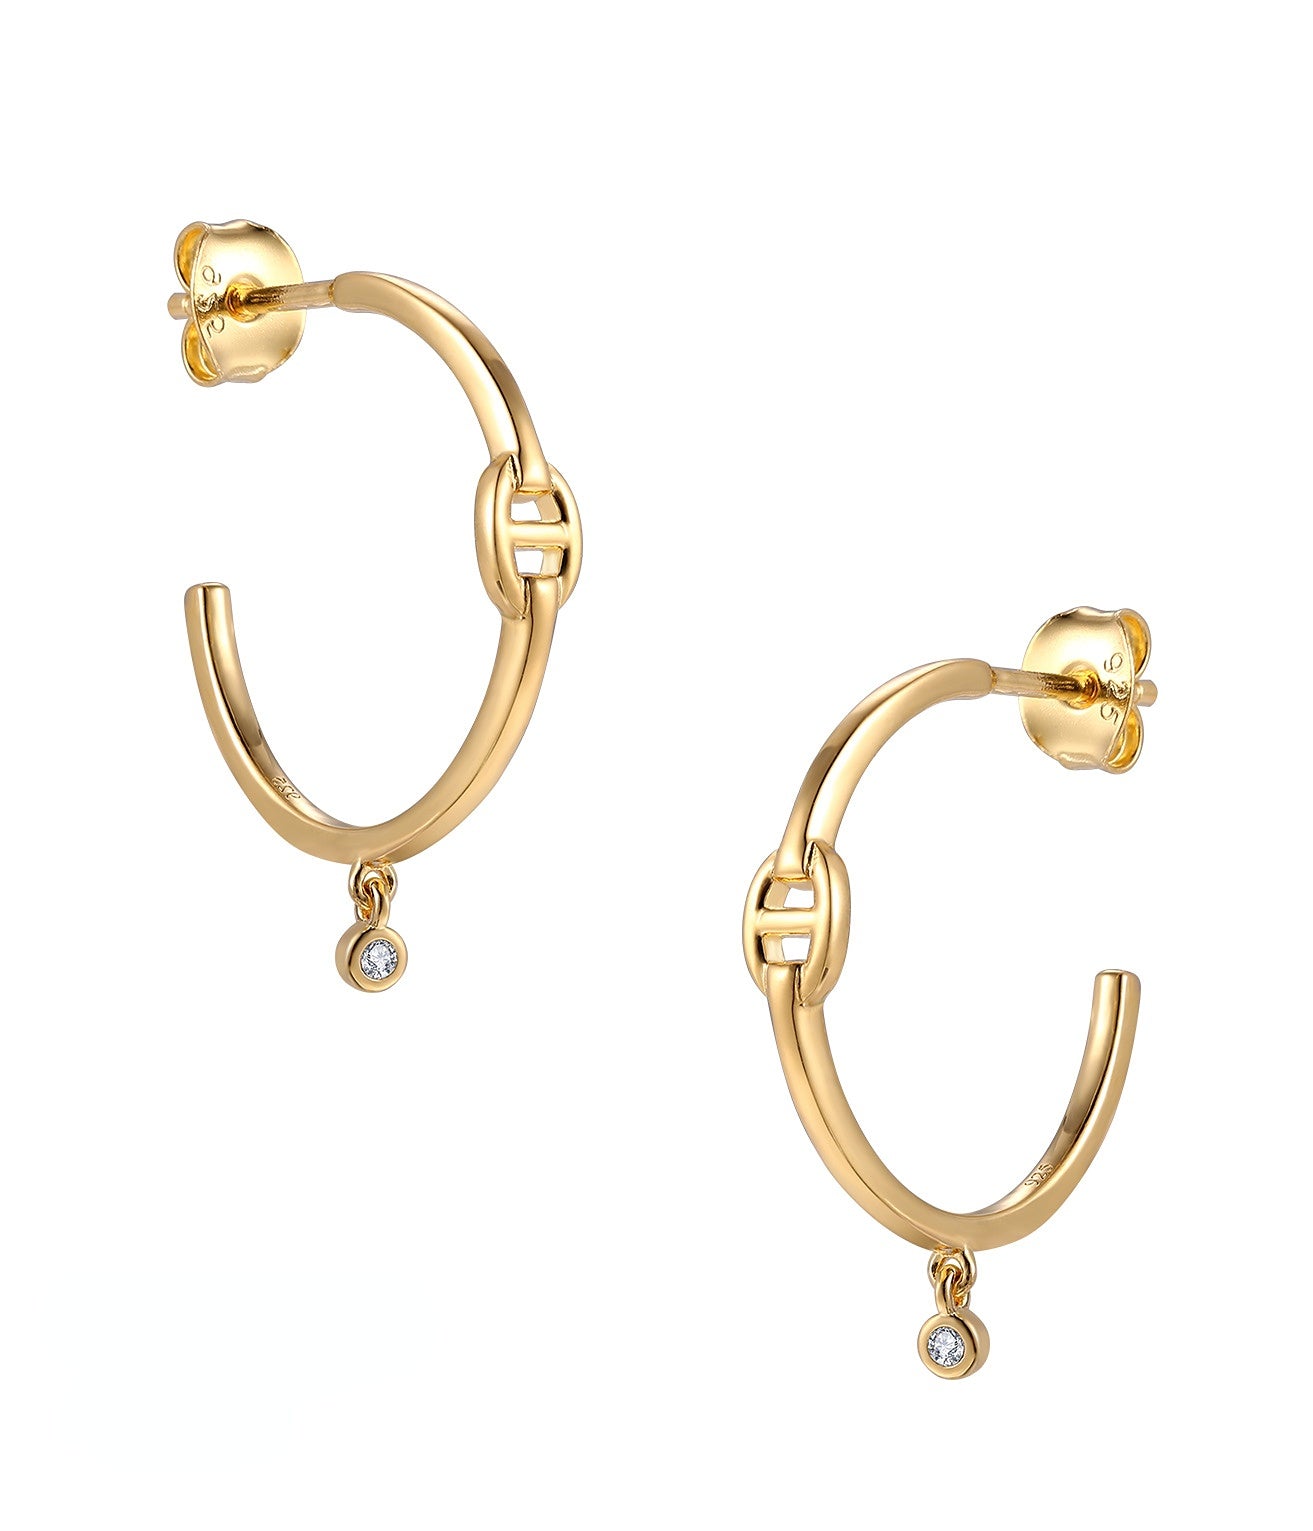 θ C-shape Silver Studs Earrings for Women